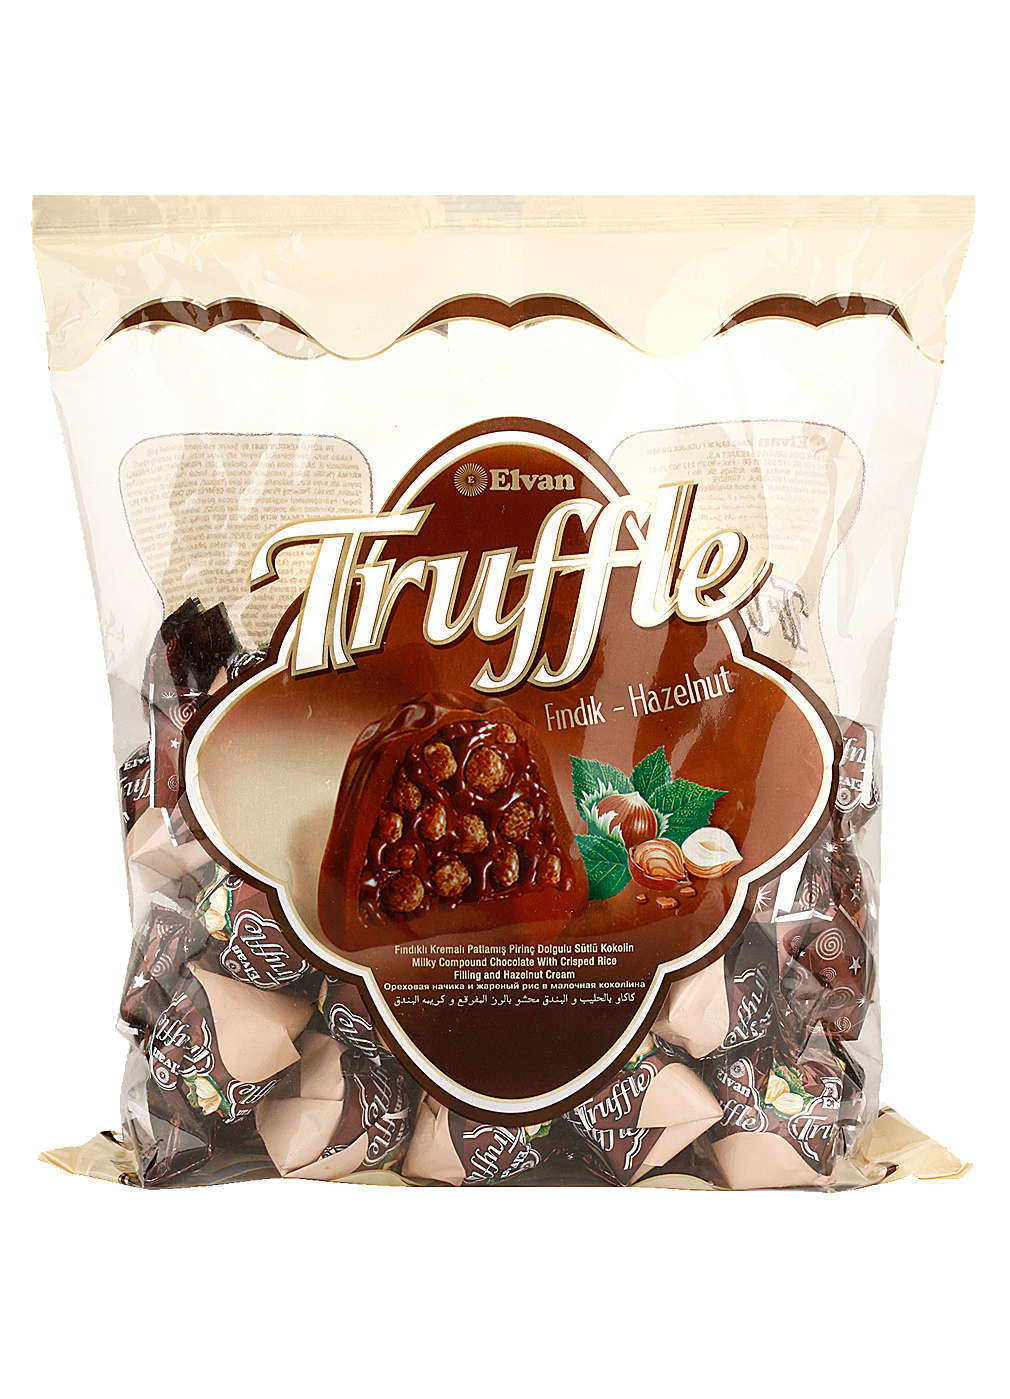 Изображение за продукта Elvan Truffle Бонбони различни видове